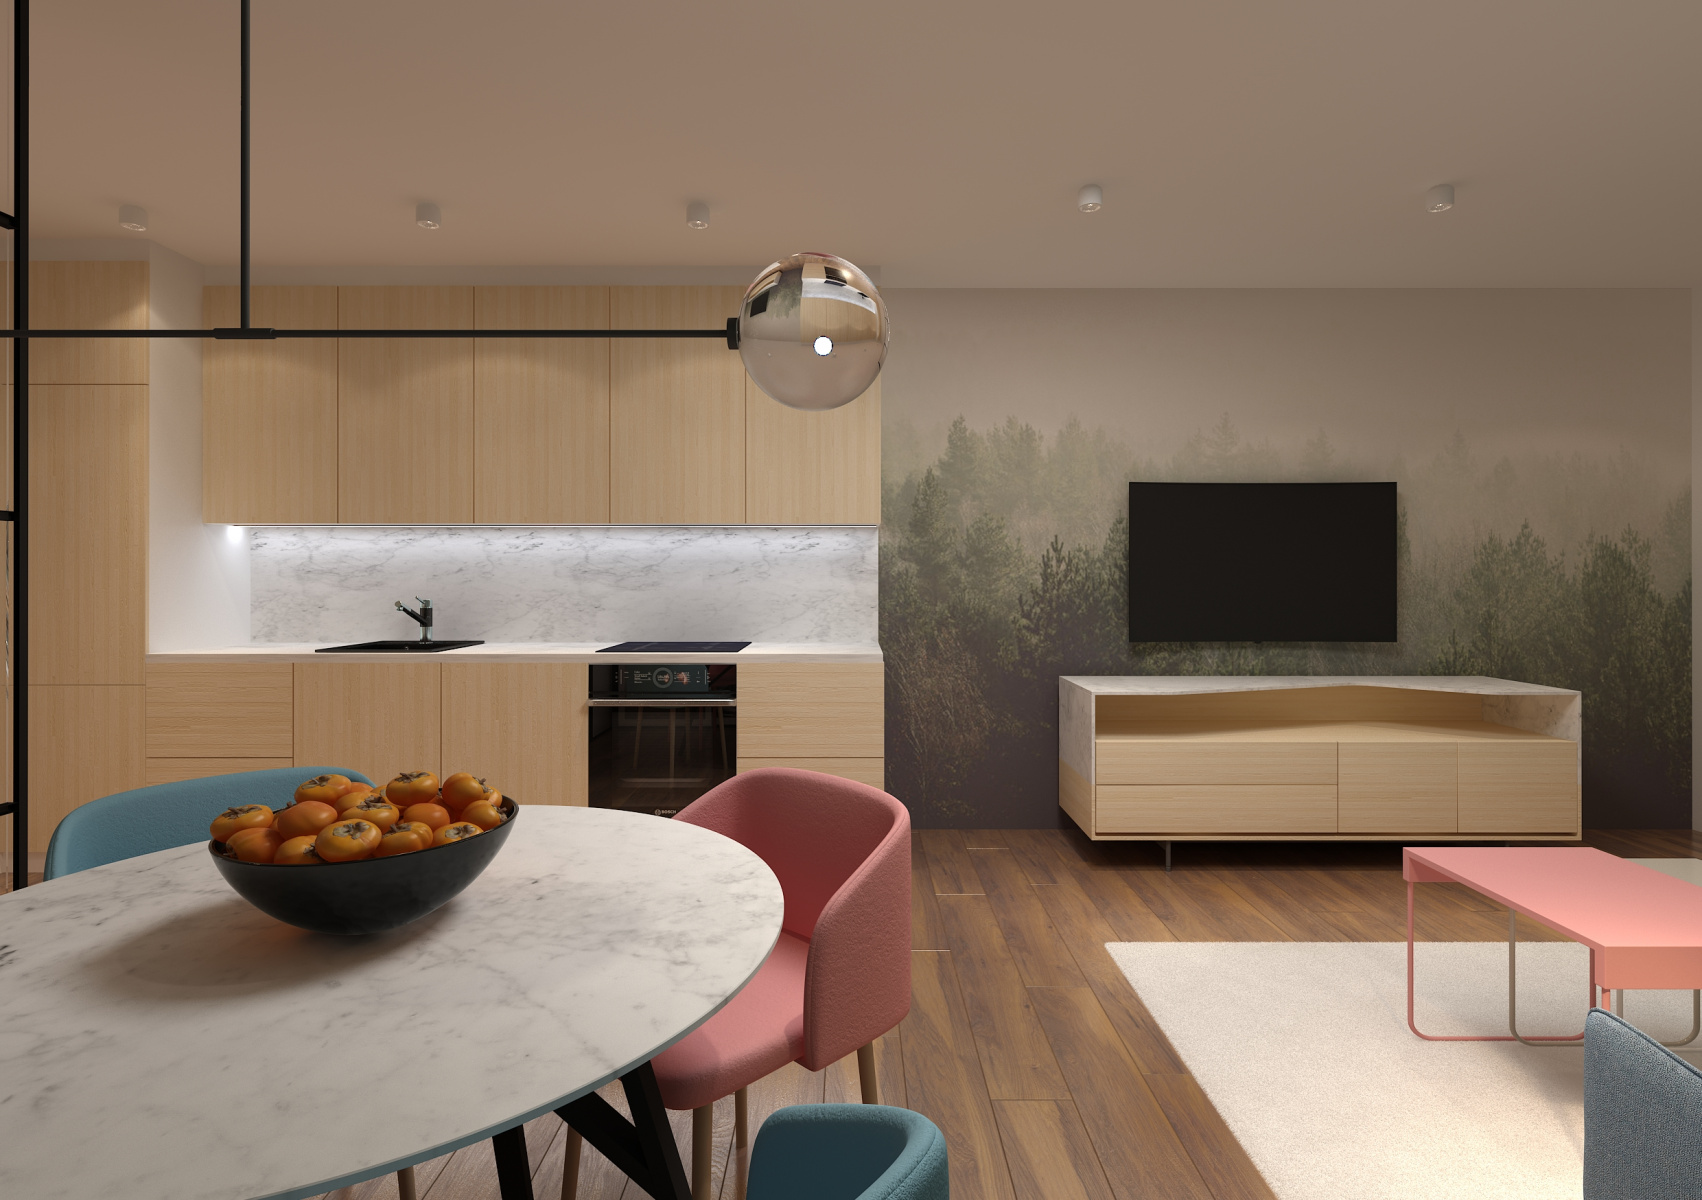 Kuchyně s obývací stěnou - Bnr Design